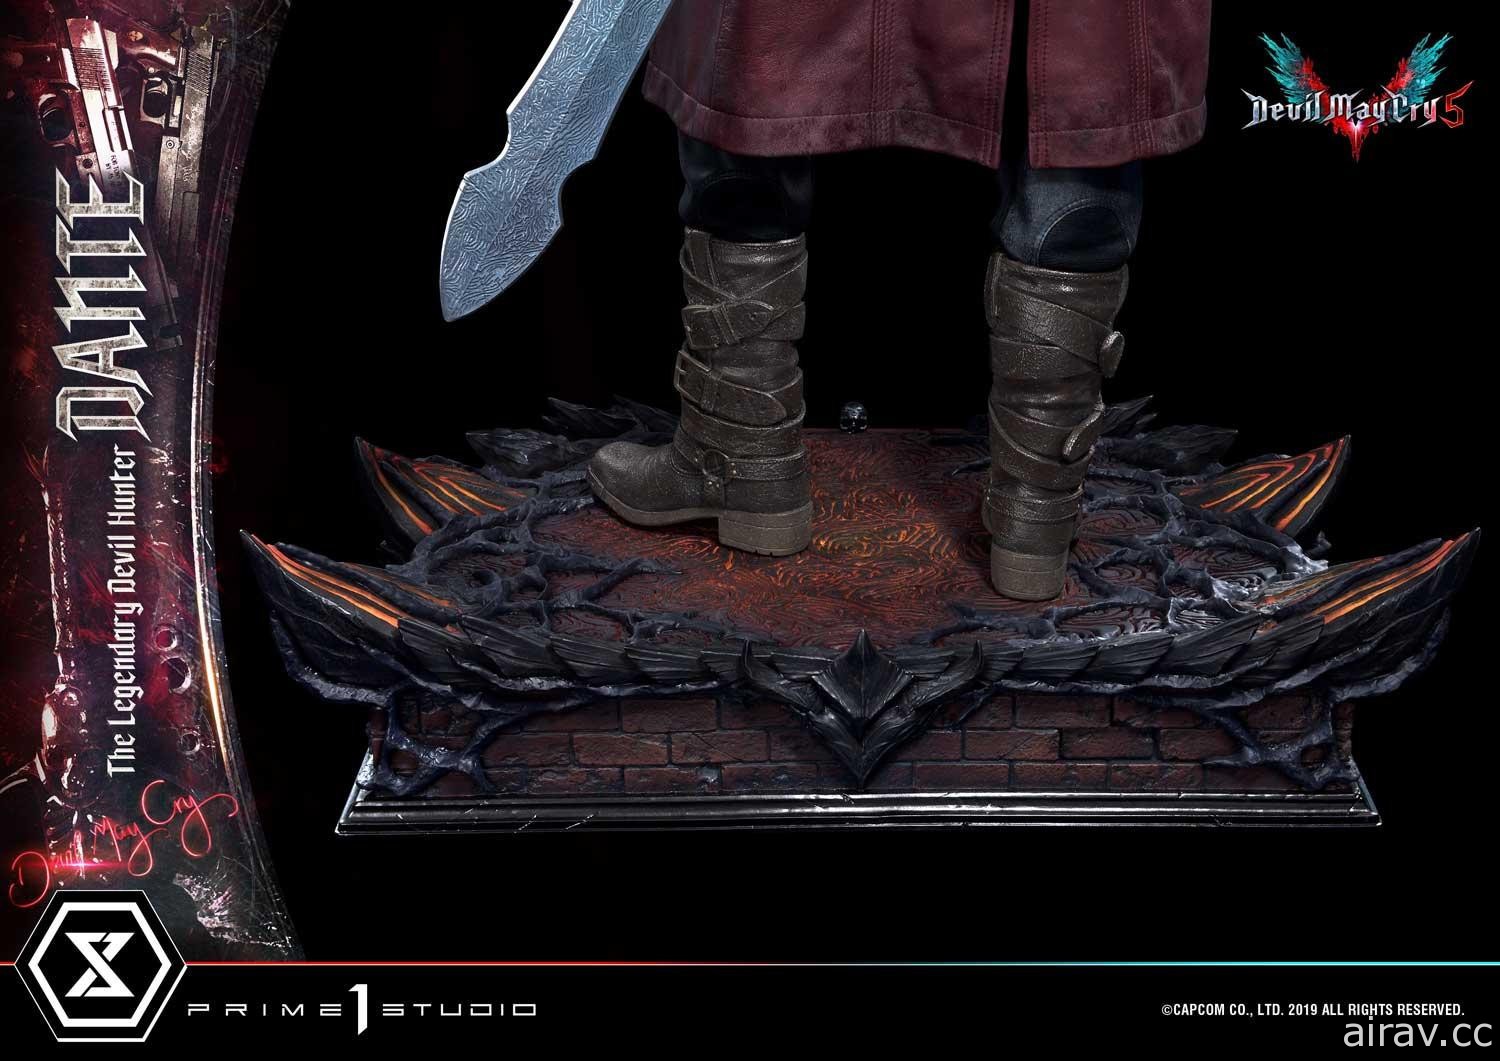 【模型】《惡魔獵人 5》1/2 比例超大 「但丁」雕像開放預購 追求極致寫實造型